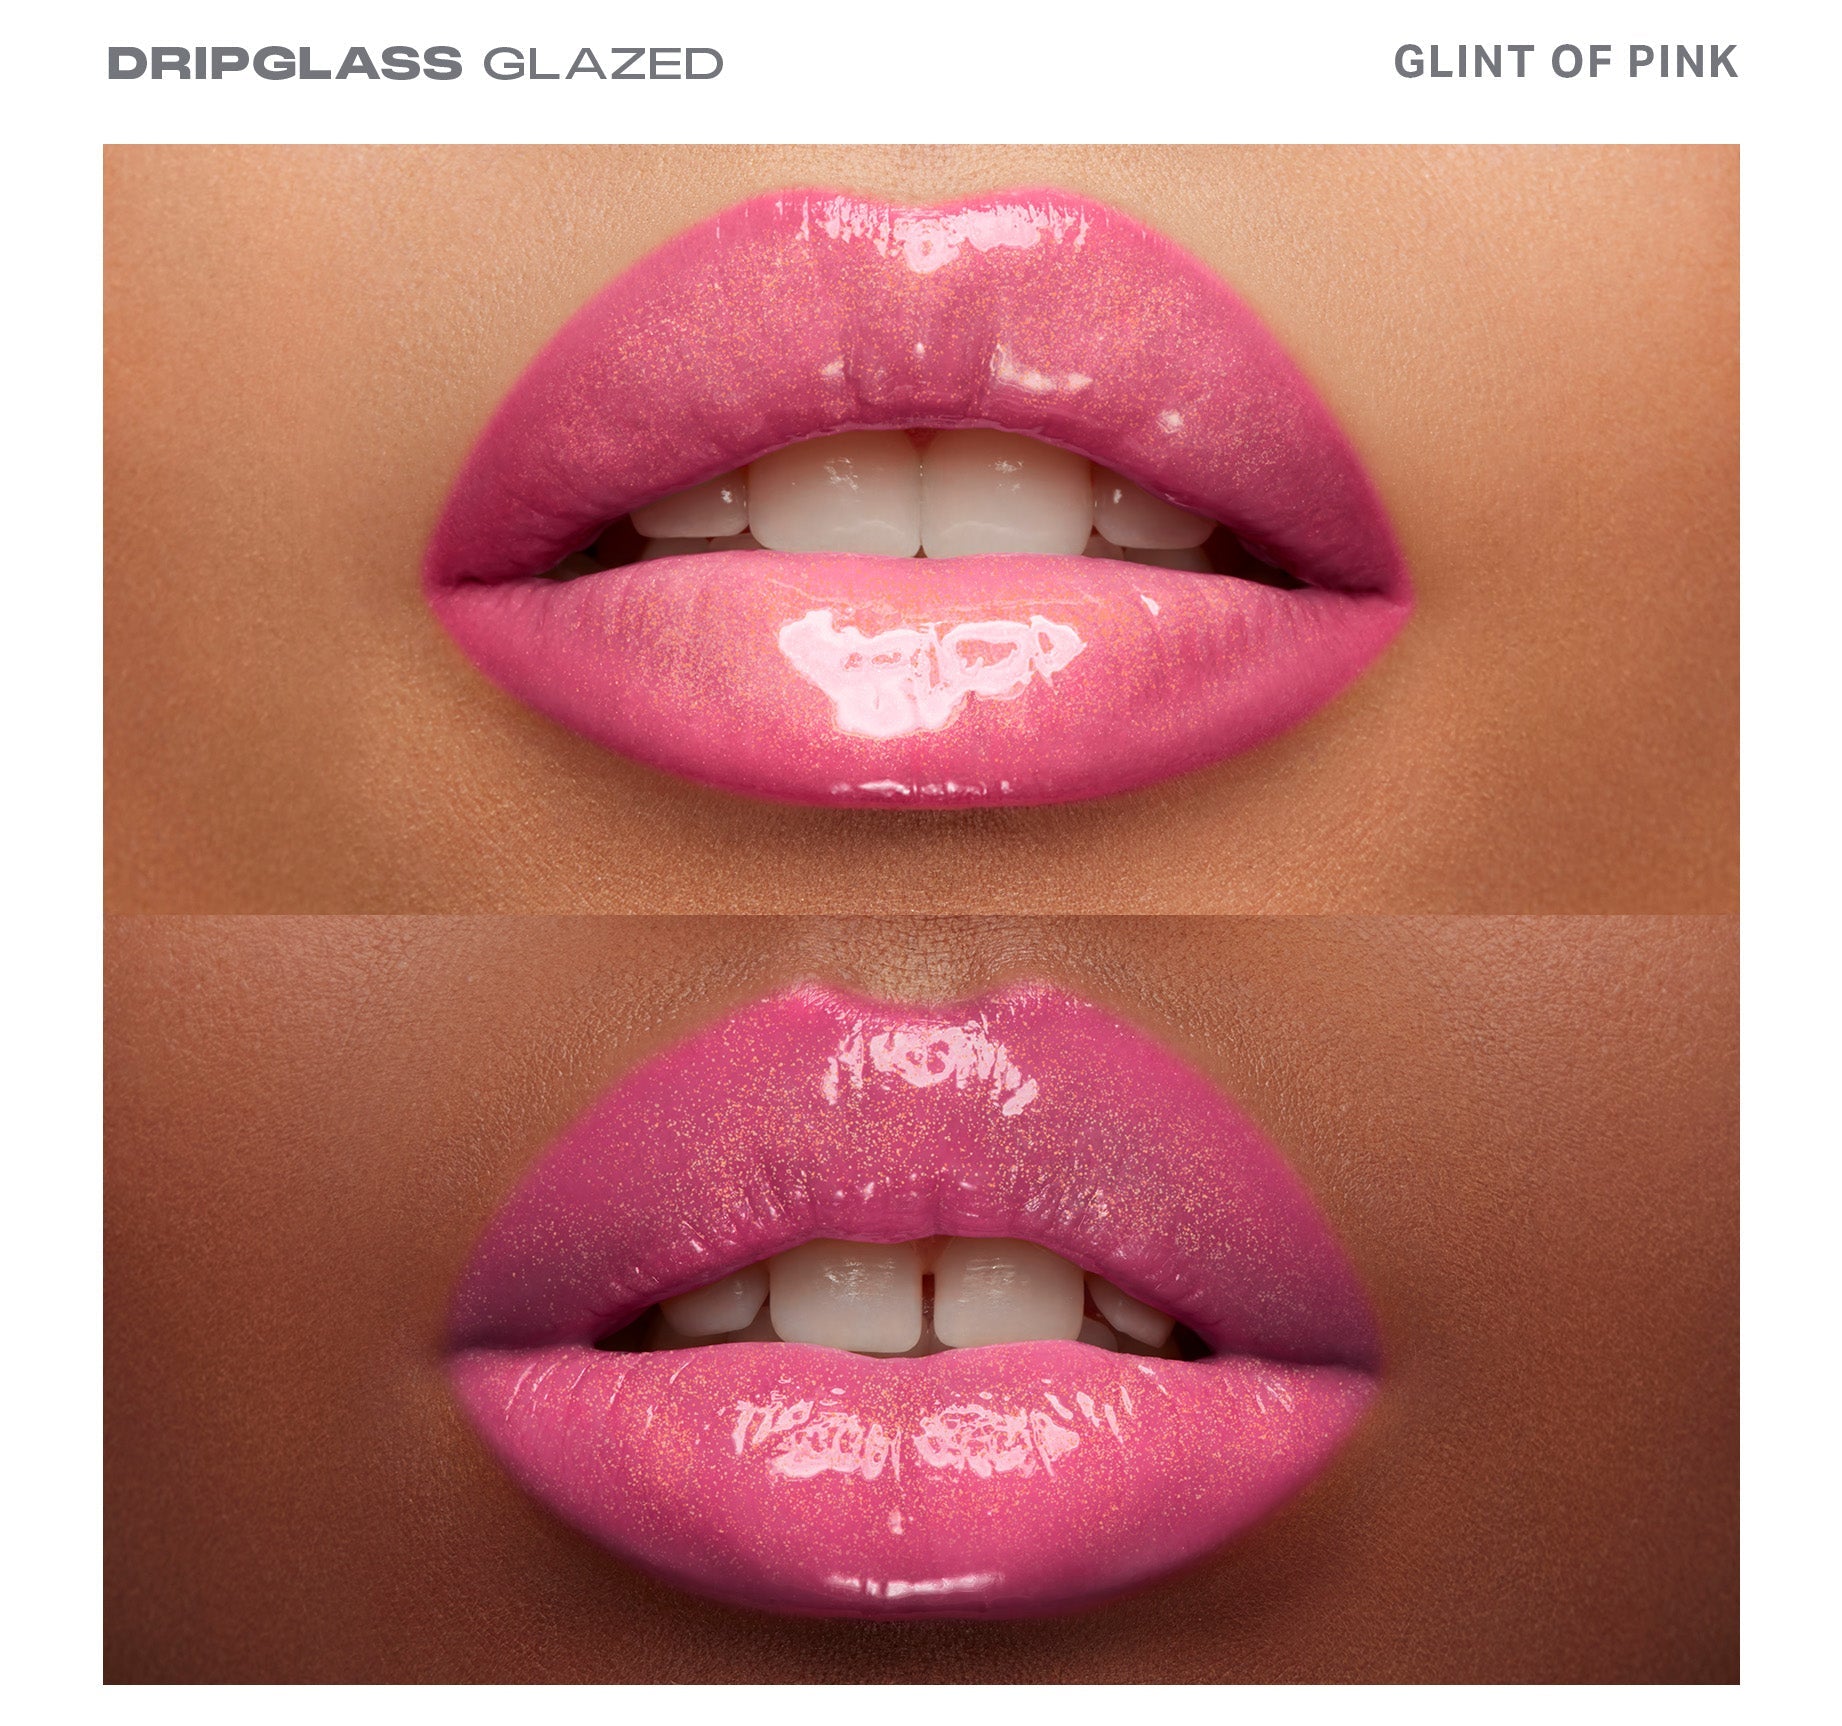 Dripglass Glazed High Shine Lip Gloss - Glint Of Pink - Image 3